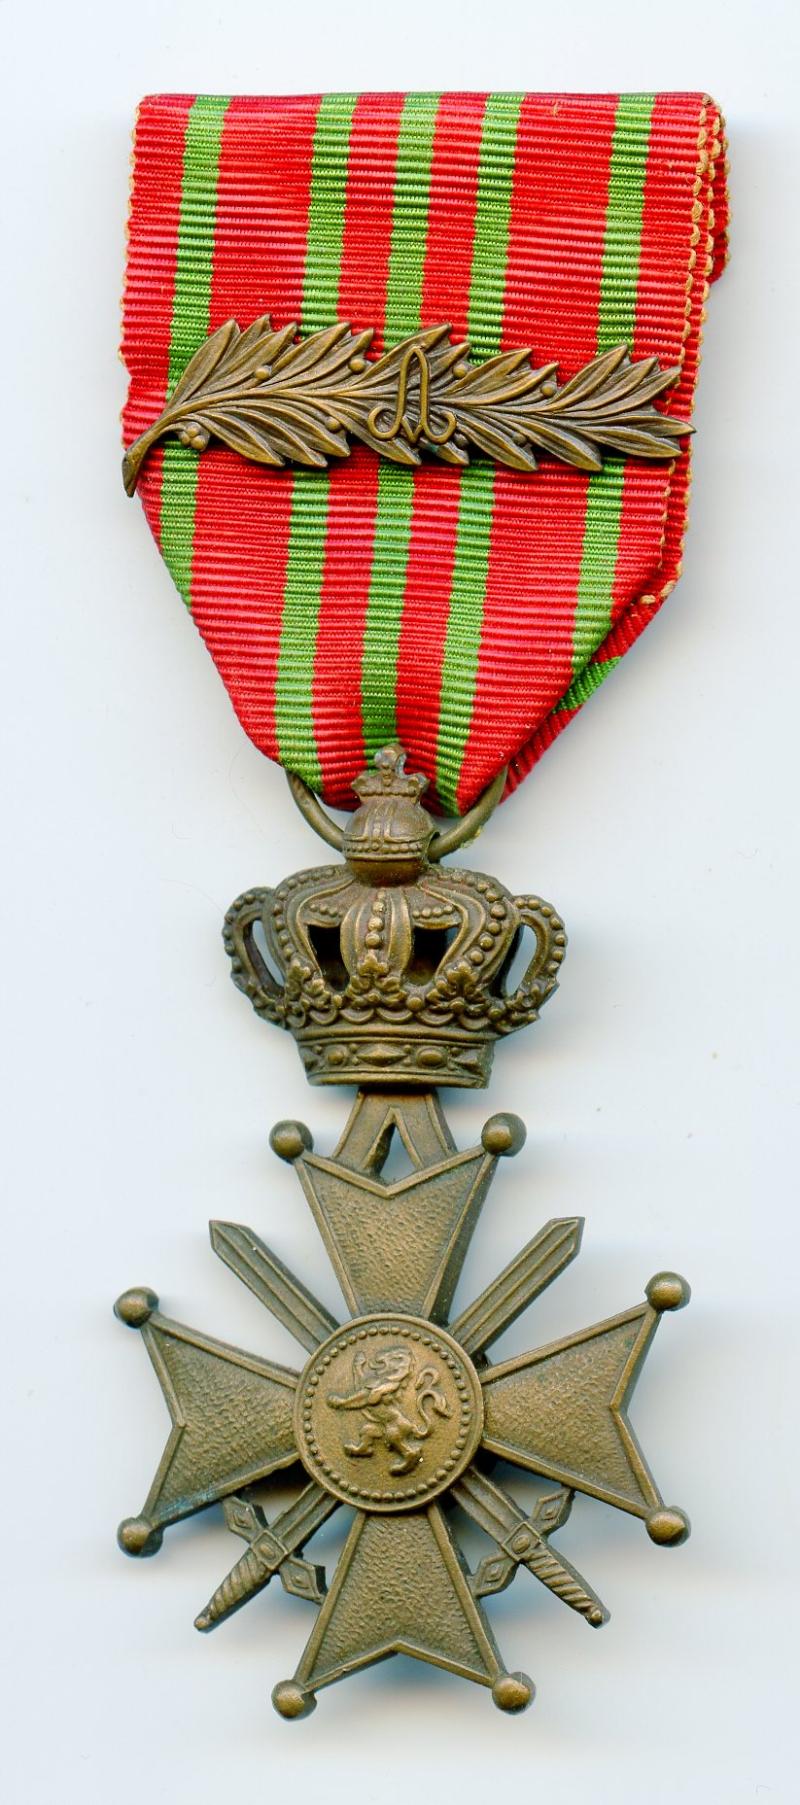 Belgium  Croix De Guerre Medal  with Palm